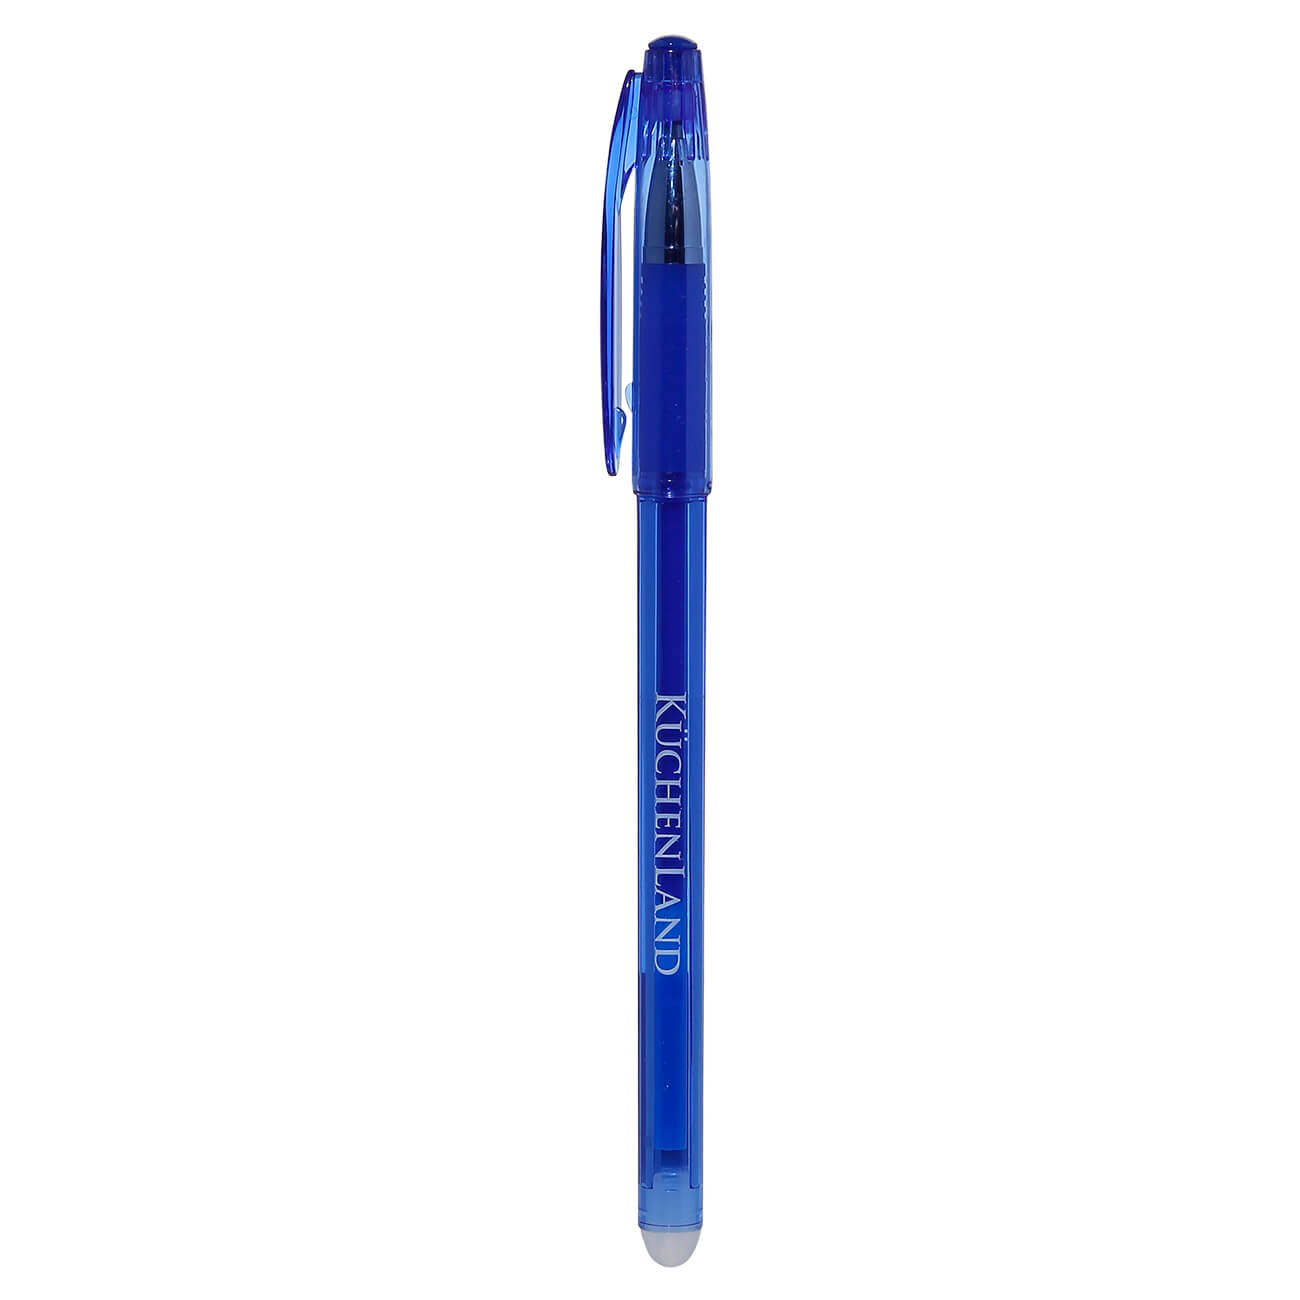 Ручка гелевая, 15 см, стираемые чернила, синяя, Draw гелевая ручка dolce costo